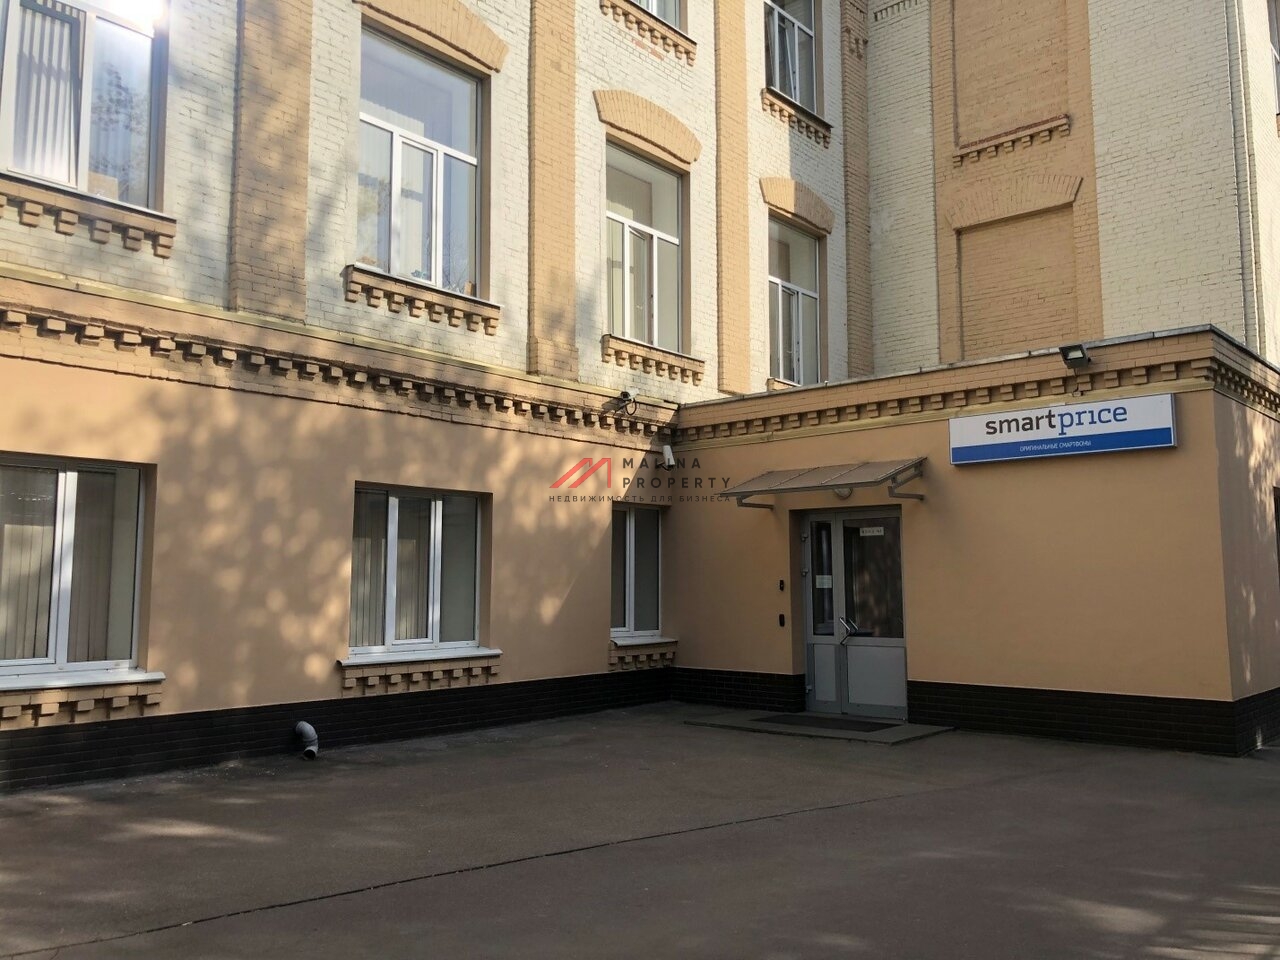 Аренда помещения под офис в Москве